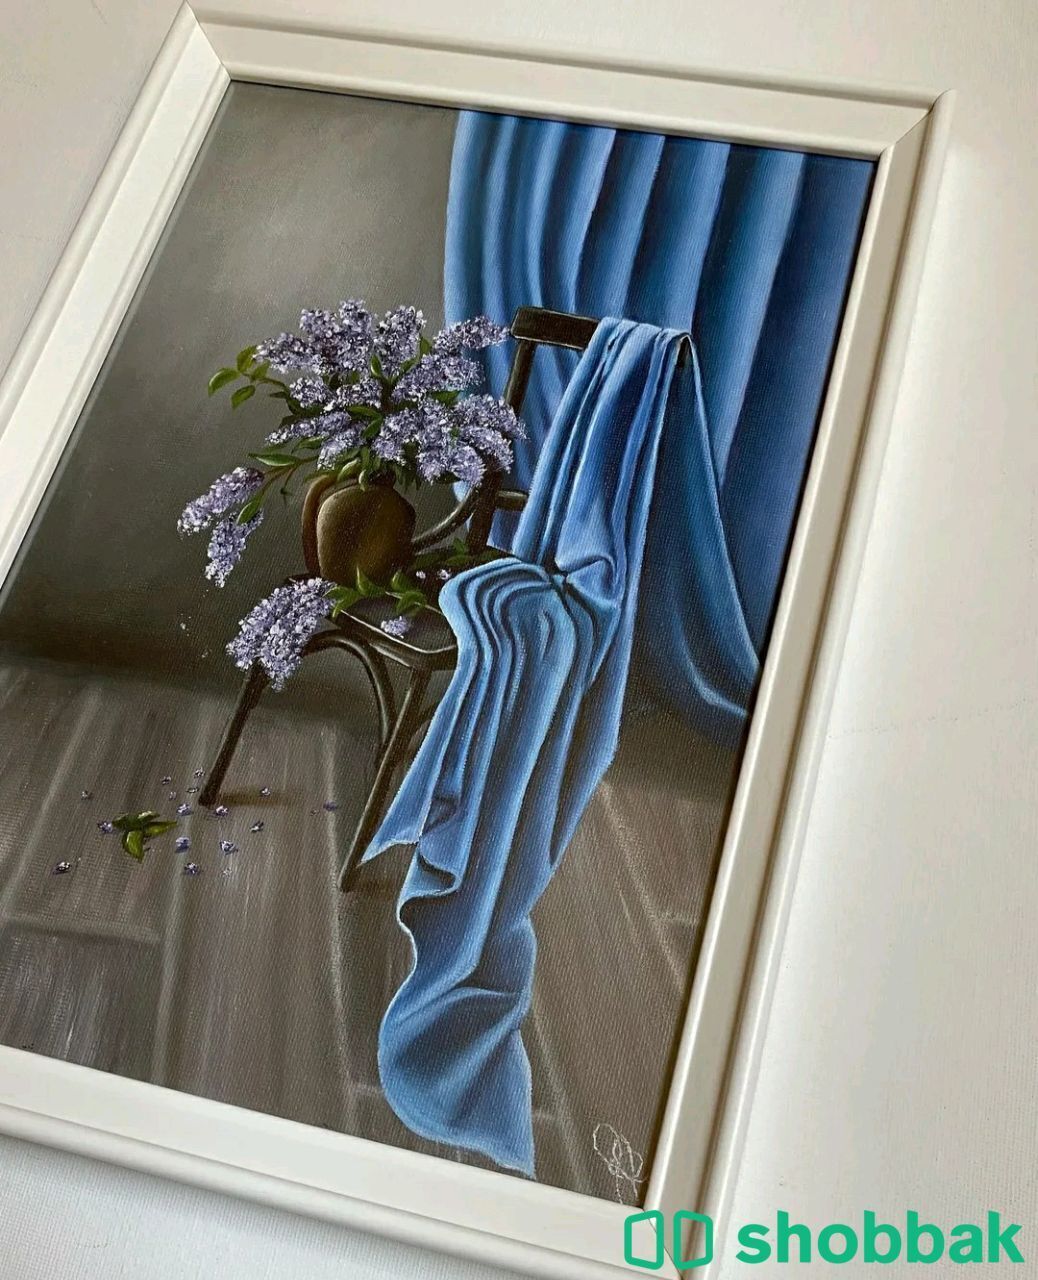 رسمة منظر غرفة بألوان زيتية على قماش كانفس

 شباك السعودية